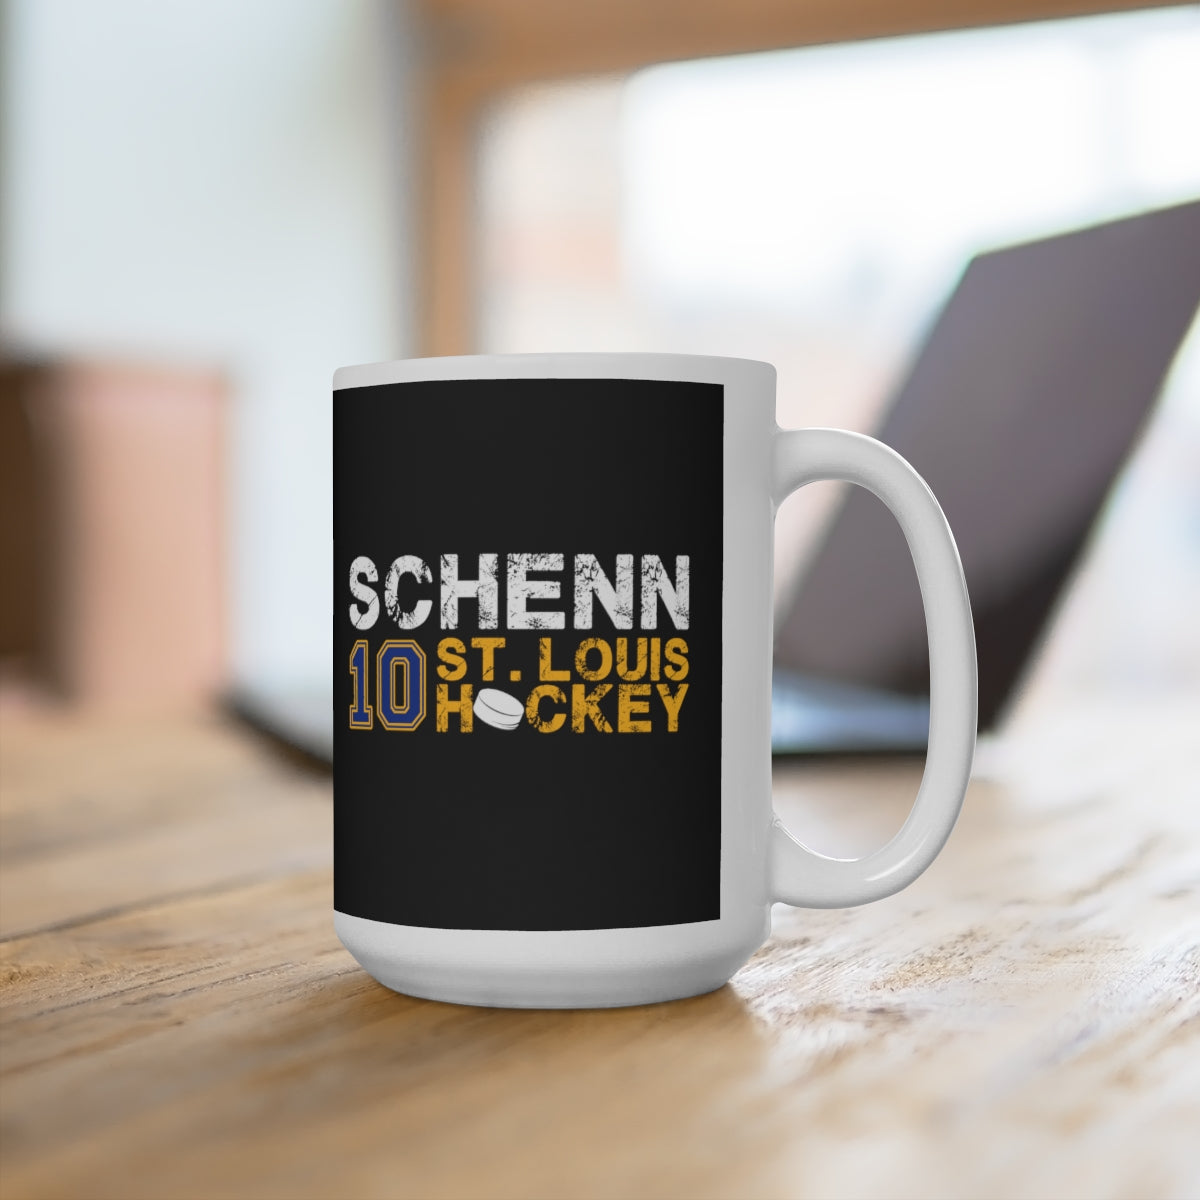 Schenn 10 St. Louis Hockey Ceramic Coffee Mug In Black, 15oz